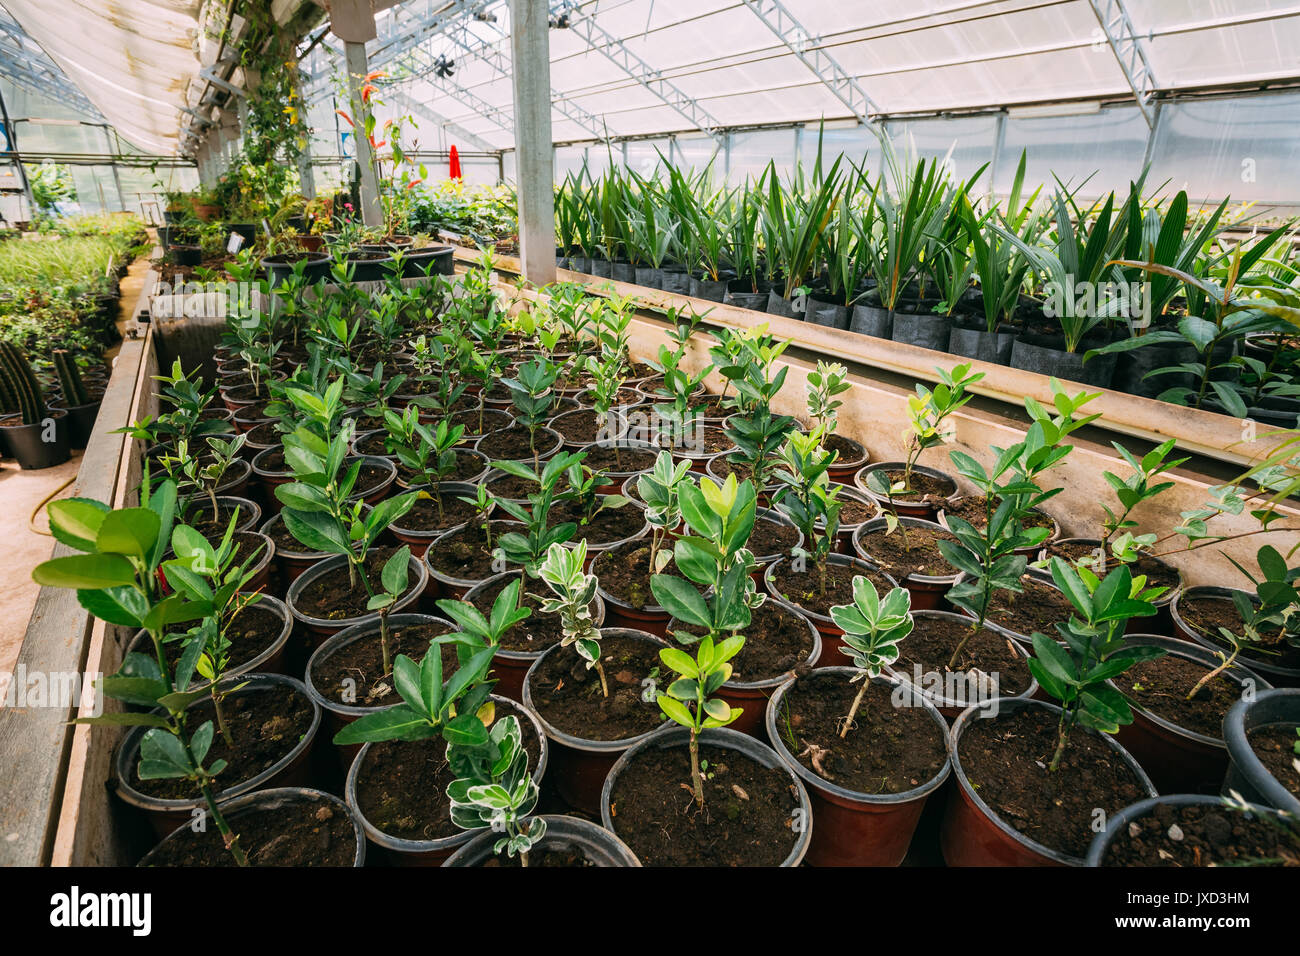 Grünen Sprossen von Pflanzen aus dem Boden In Töpfen im Gewächshaus oder Gewächshaus. Frühling, Konzept des neuen Lebens. Stockfoto